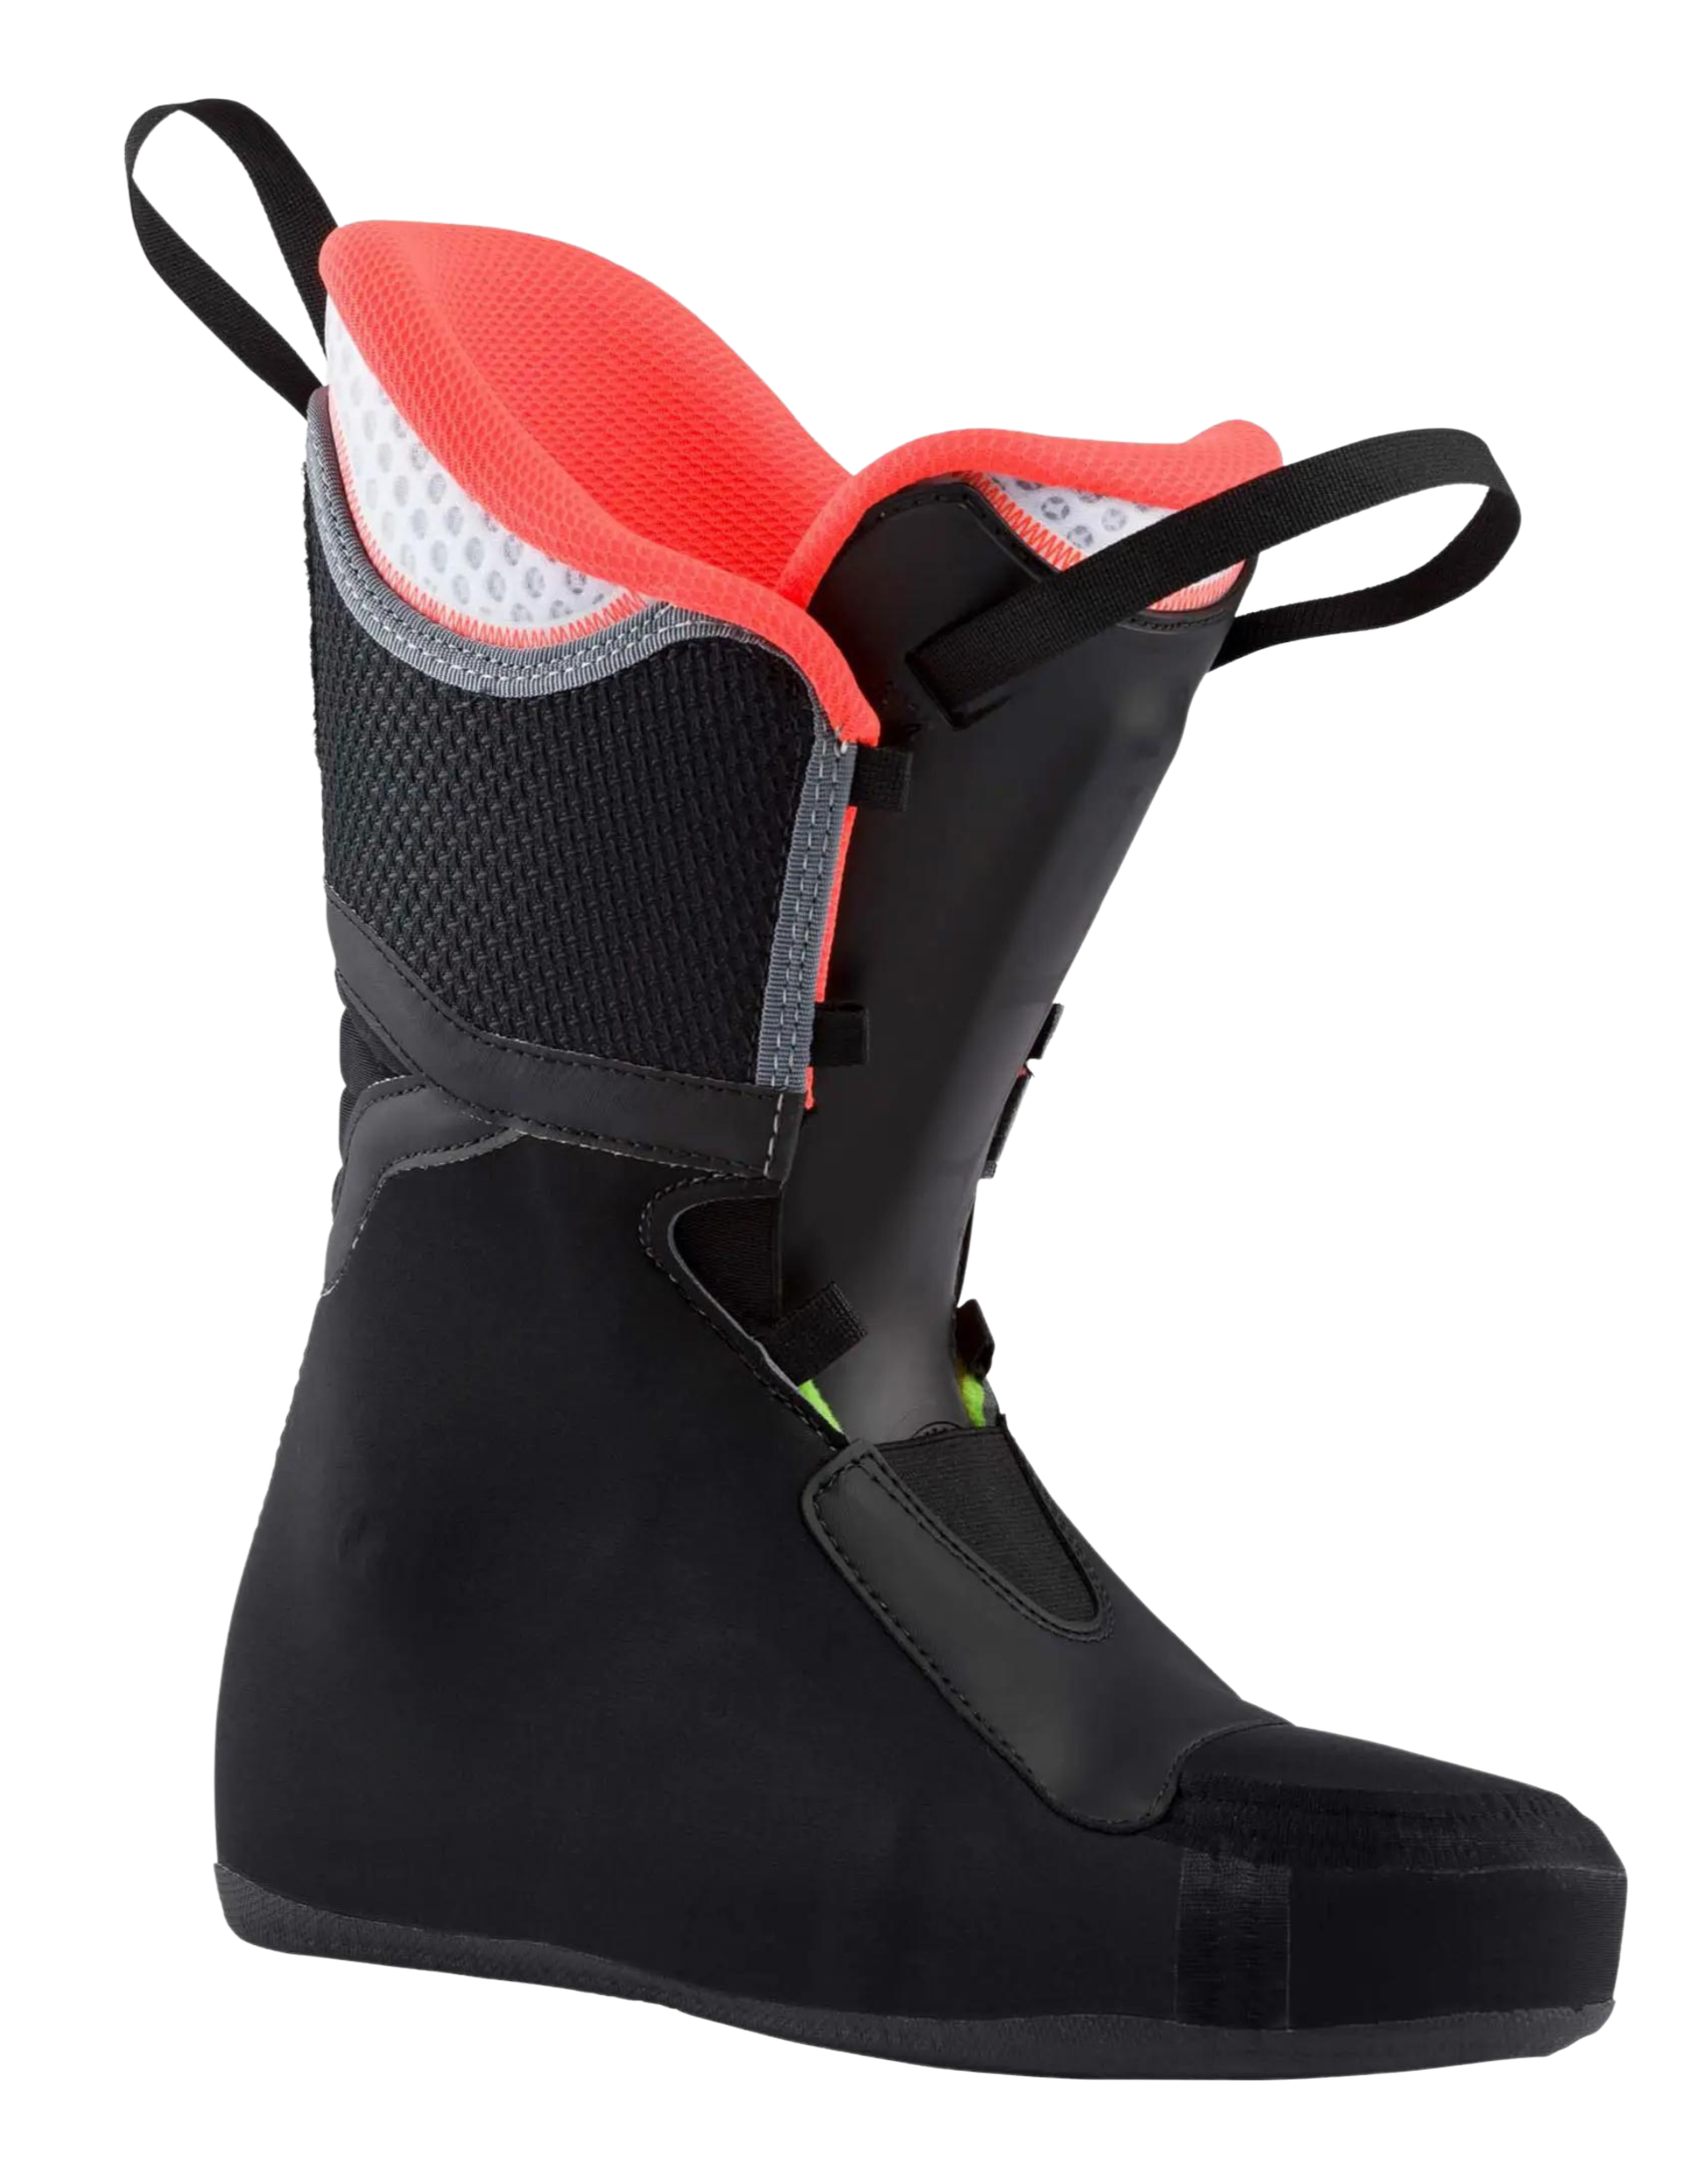 Chaussures de ski de randonnée ROSSIGNOL Alltrack Elite 90 LT Femme : technologie Thinsulate™ Stretch garantissant l'isolation tout en offrant un meilleur maintien du pied pour une skiabilité accrue